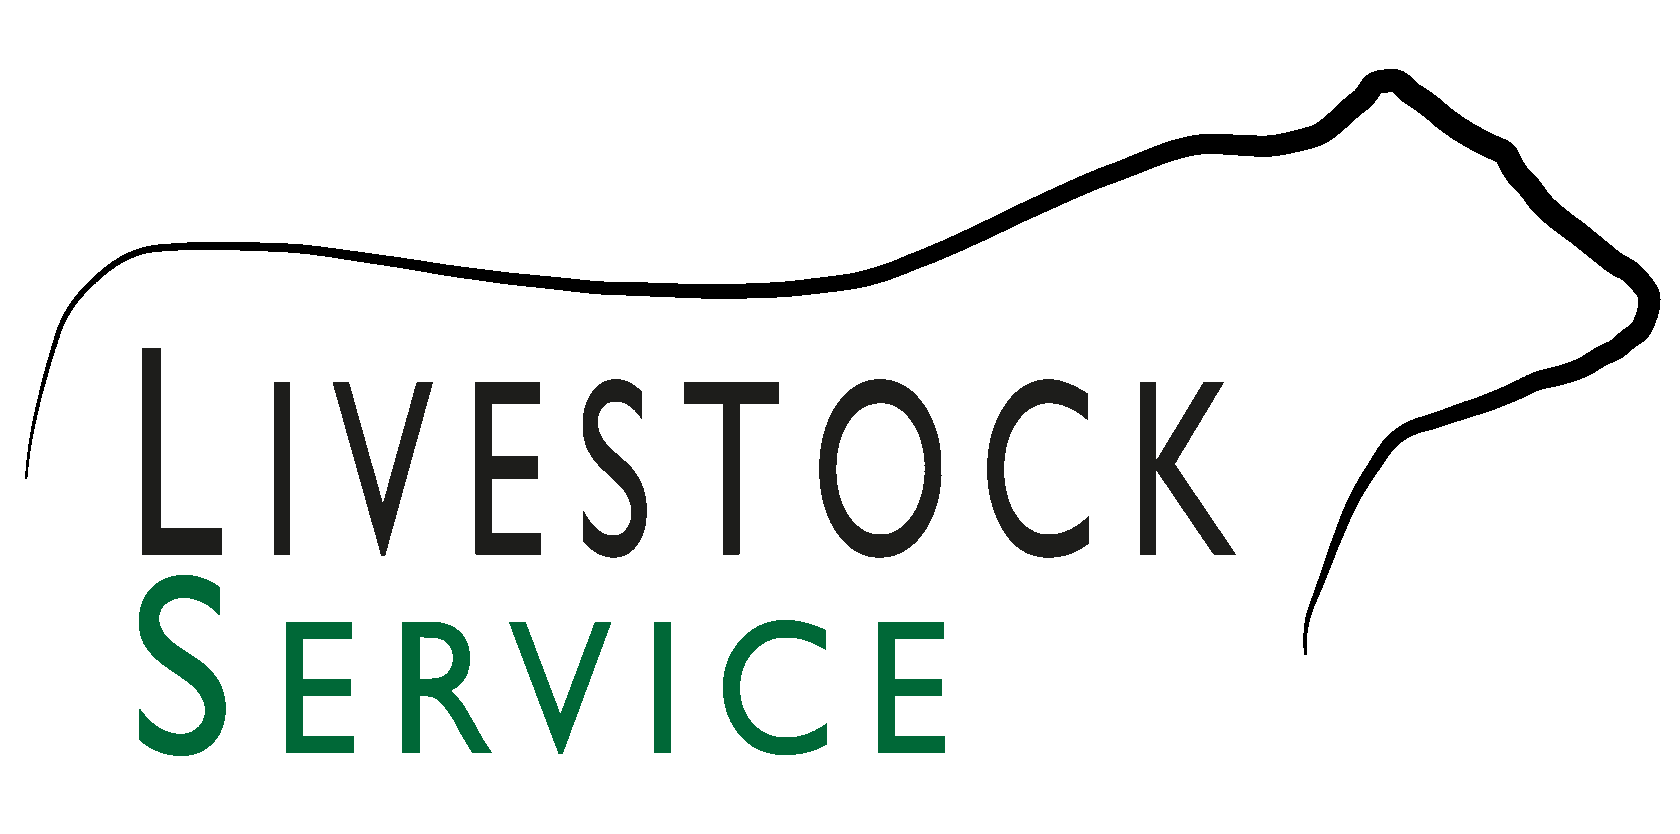 LivestockService.kz